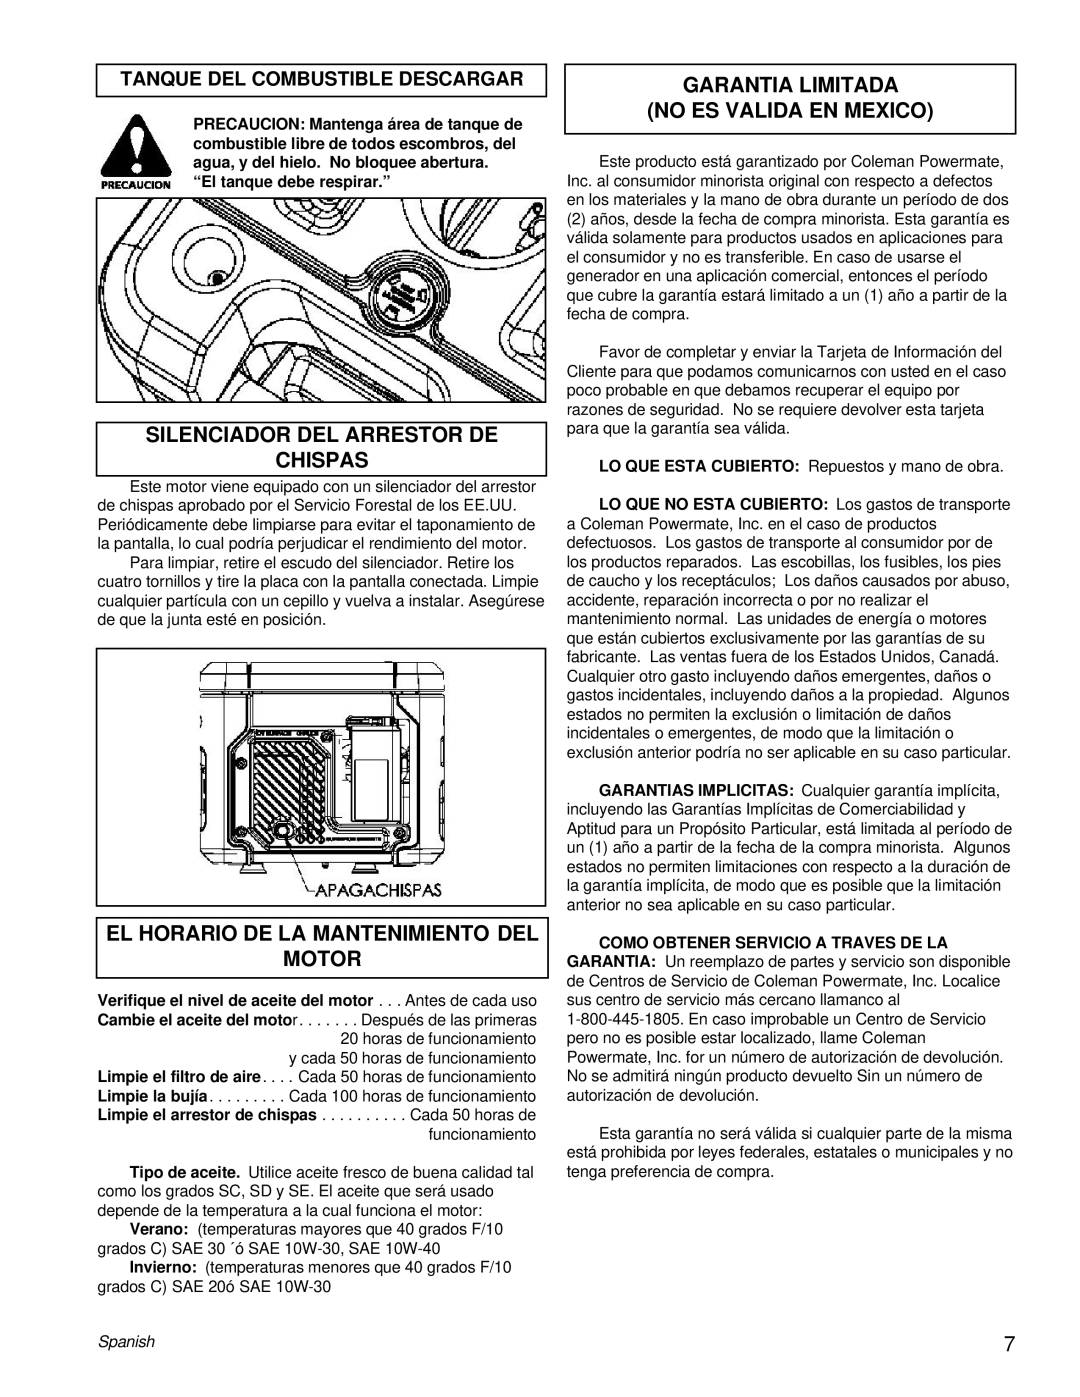 Powermate PM0401853 manual Silenciador Del Arrestor De Chispas, El Horario De La Mantenimiento Del Motor, Spanish 